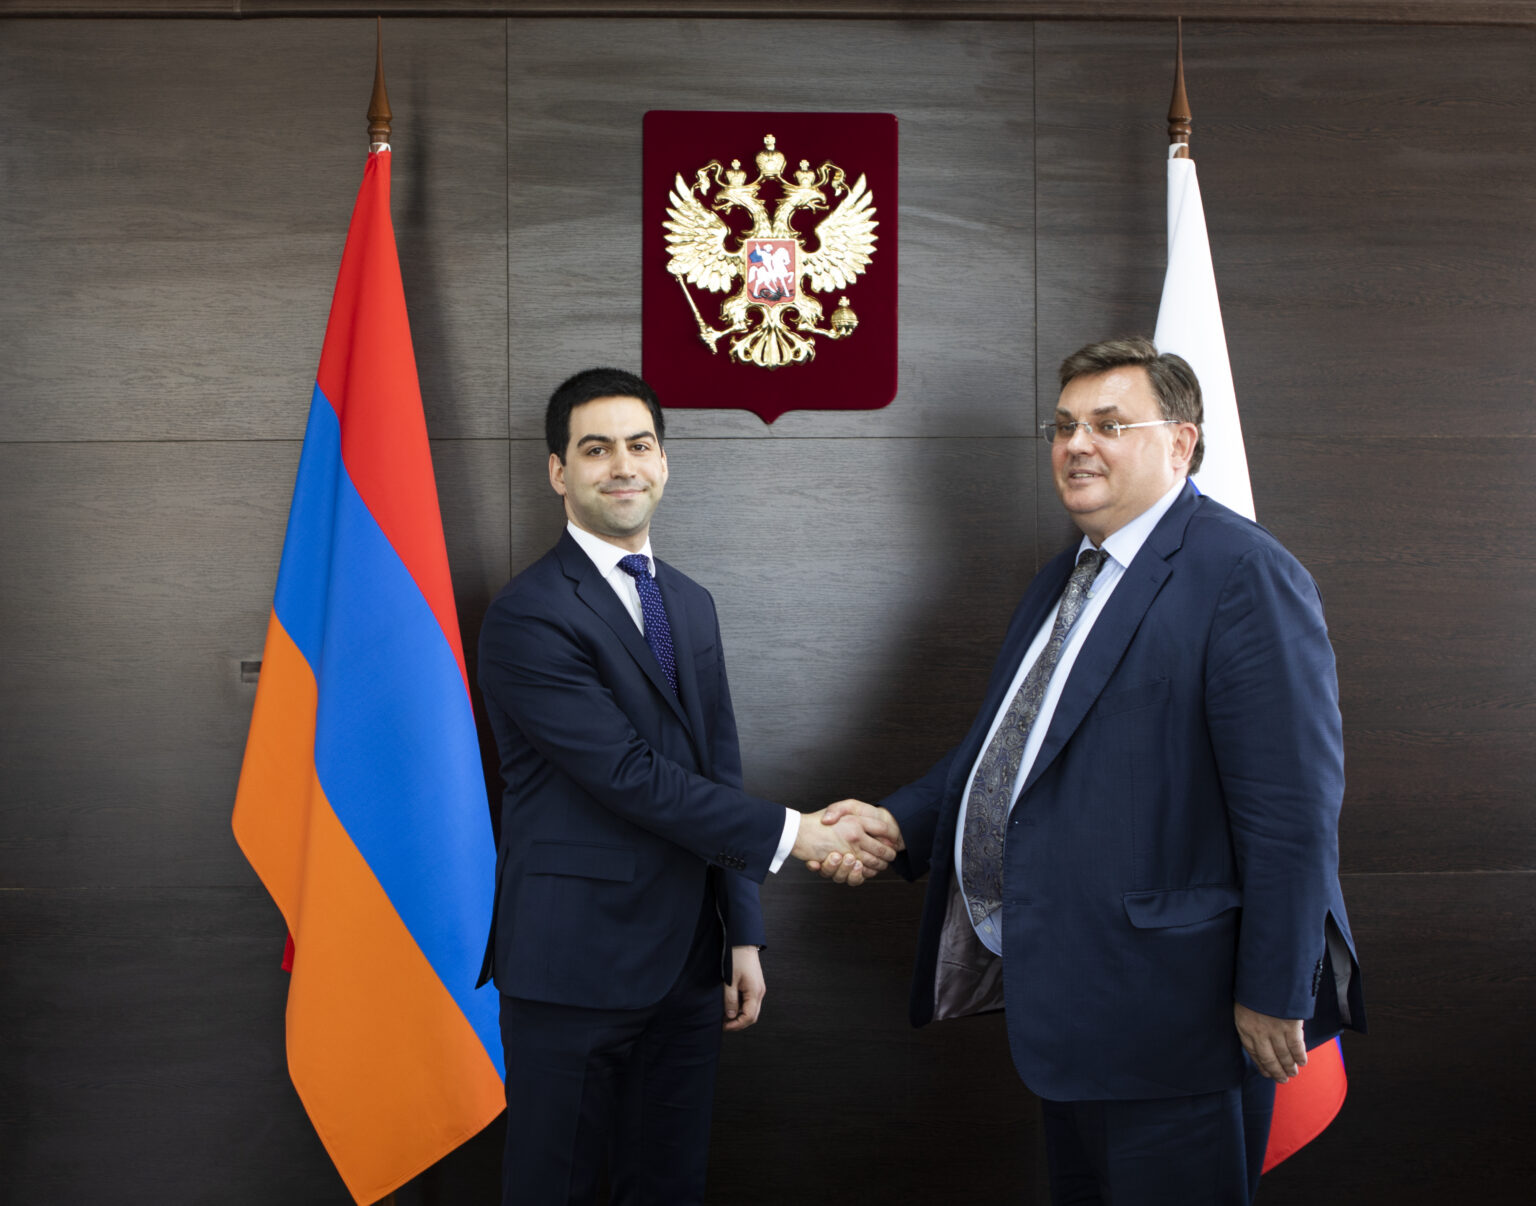 Հայաստանի և Ռուսաստանի արդարադատության նախարարները քննարկել են համագործակցությունը խորացնելու հնարավորությունները